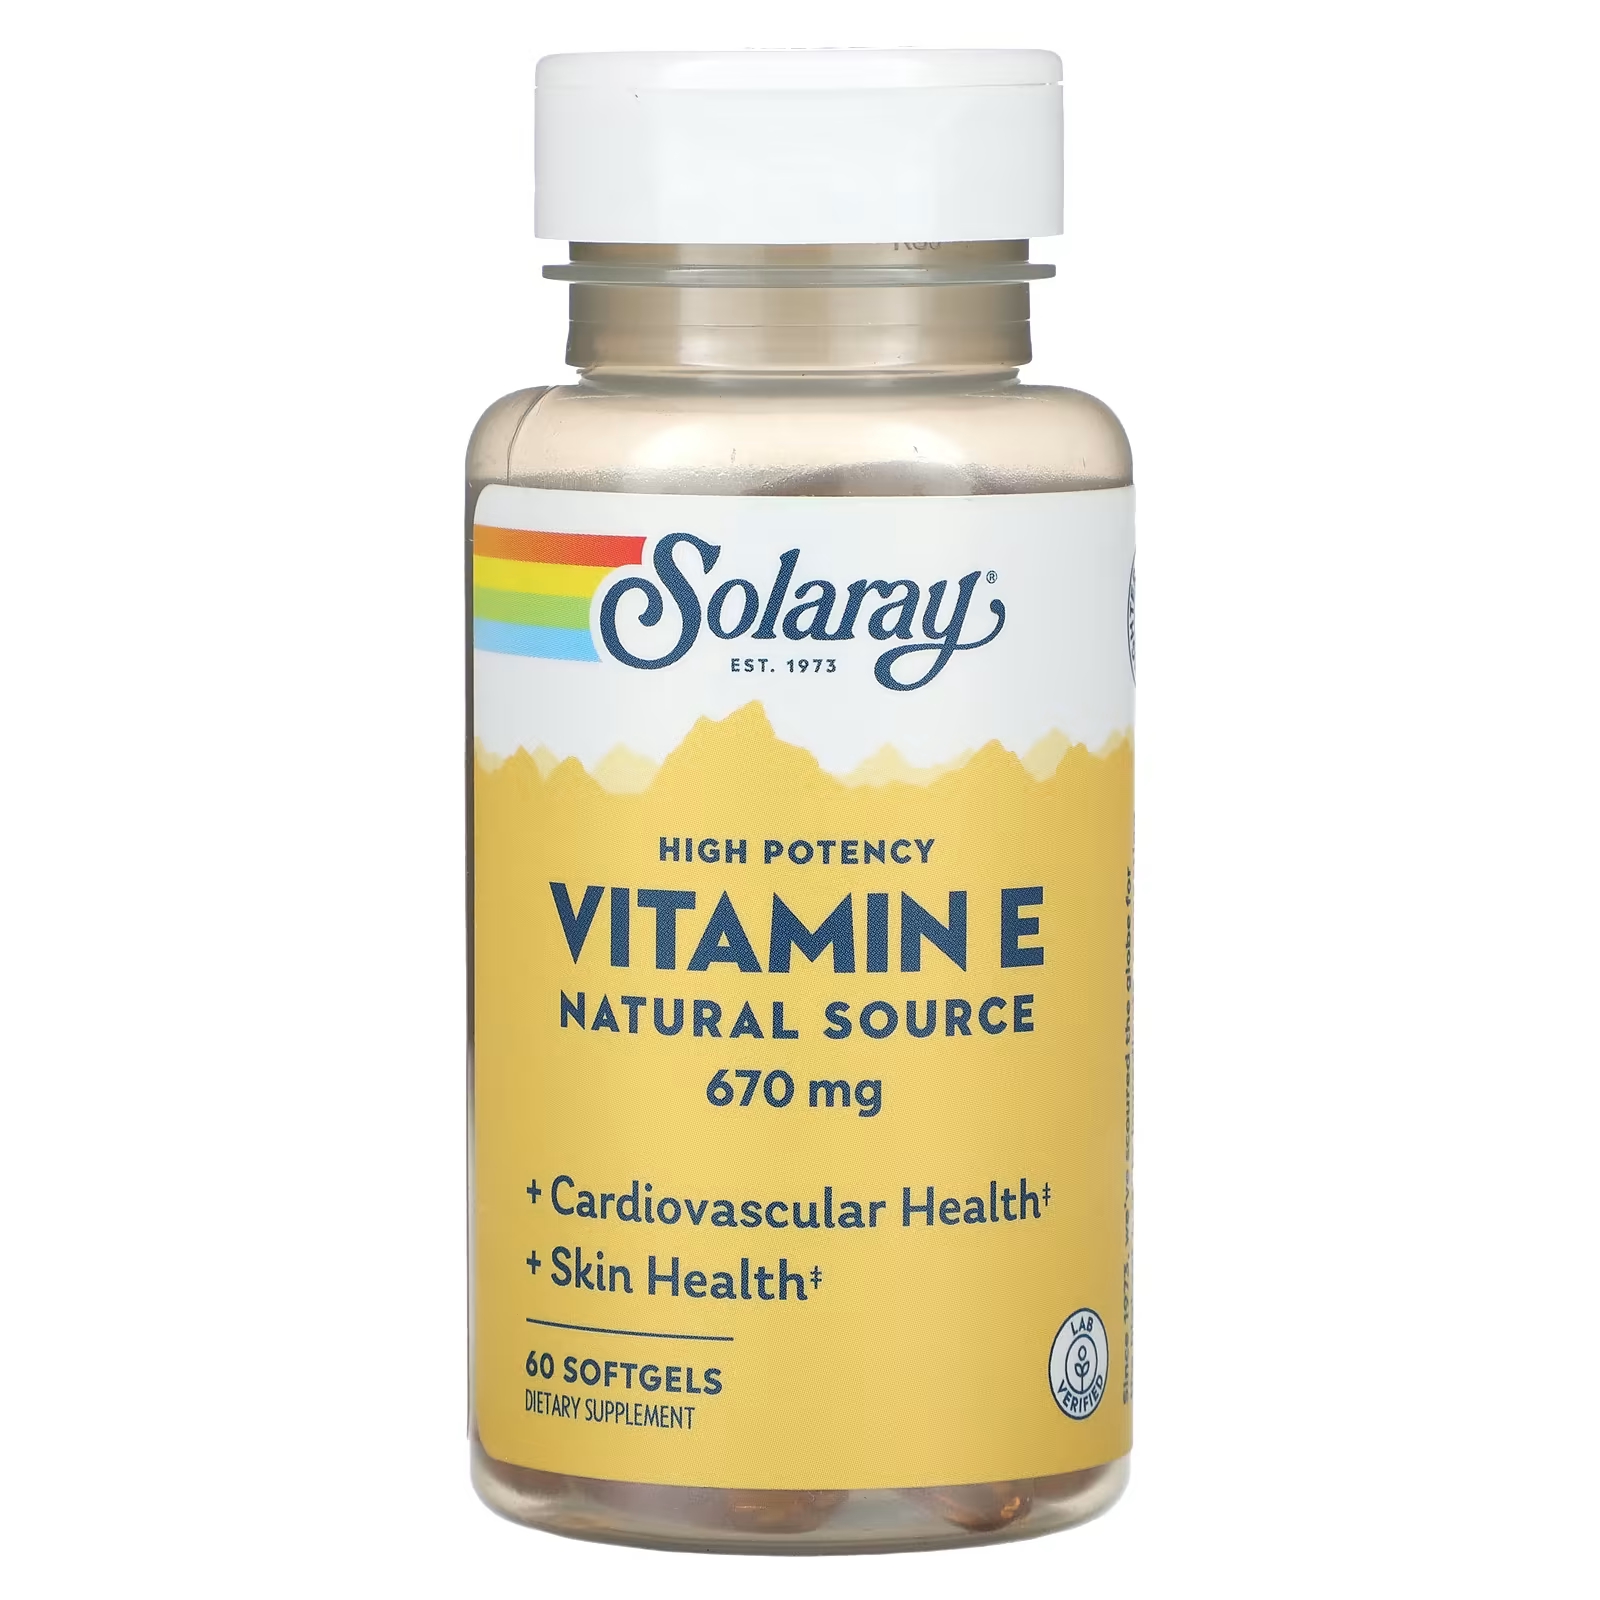 Solaray Витамин Е из природного источника, высокая эффективность, 670 мг, 60 мягких таблеток solaray витамин е из природного источника высокая эффективность 670 мг 60 мягких таблеток